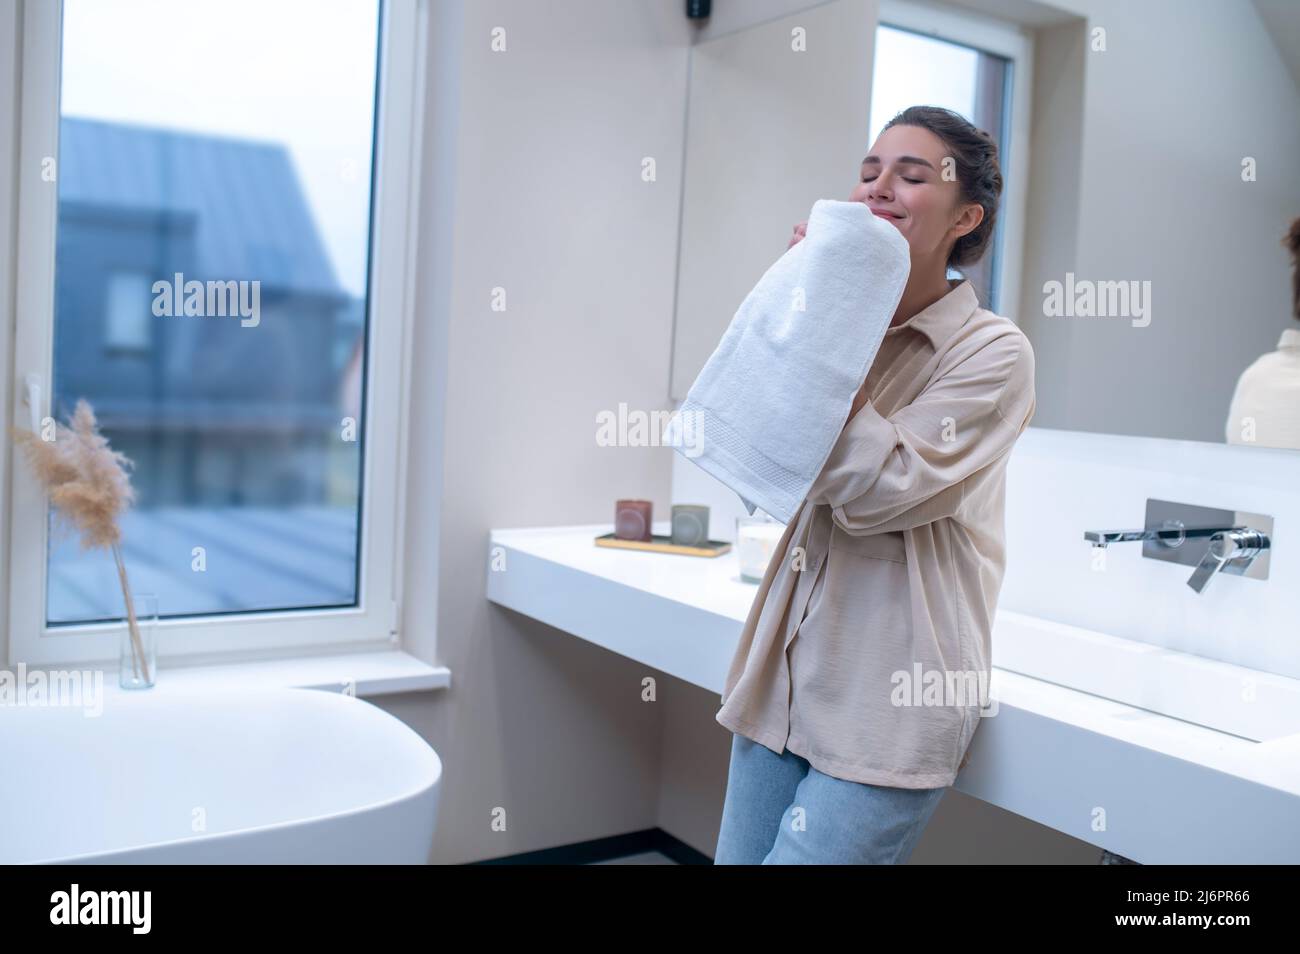 Une femme sent une serviette fraîche après le lavage Banque D'Images